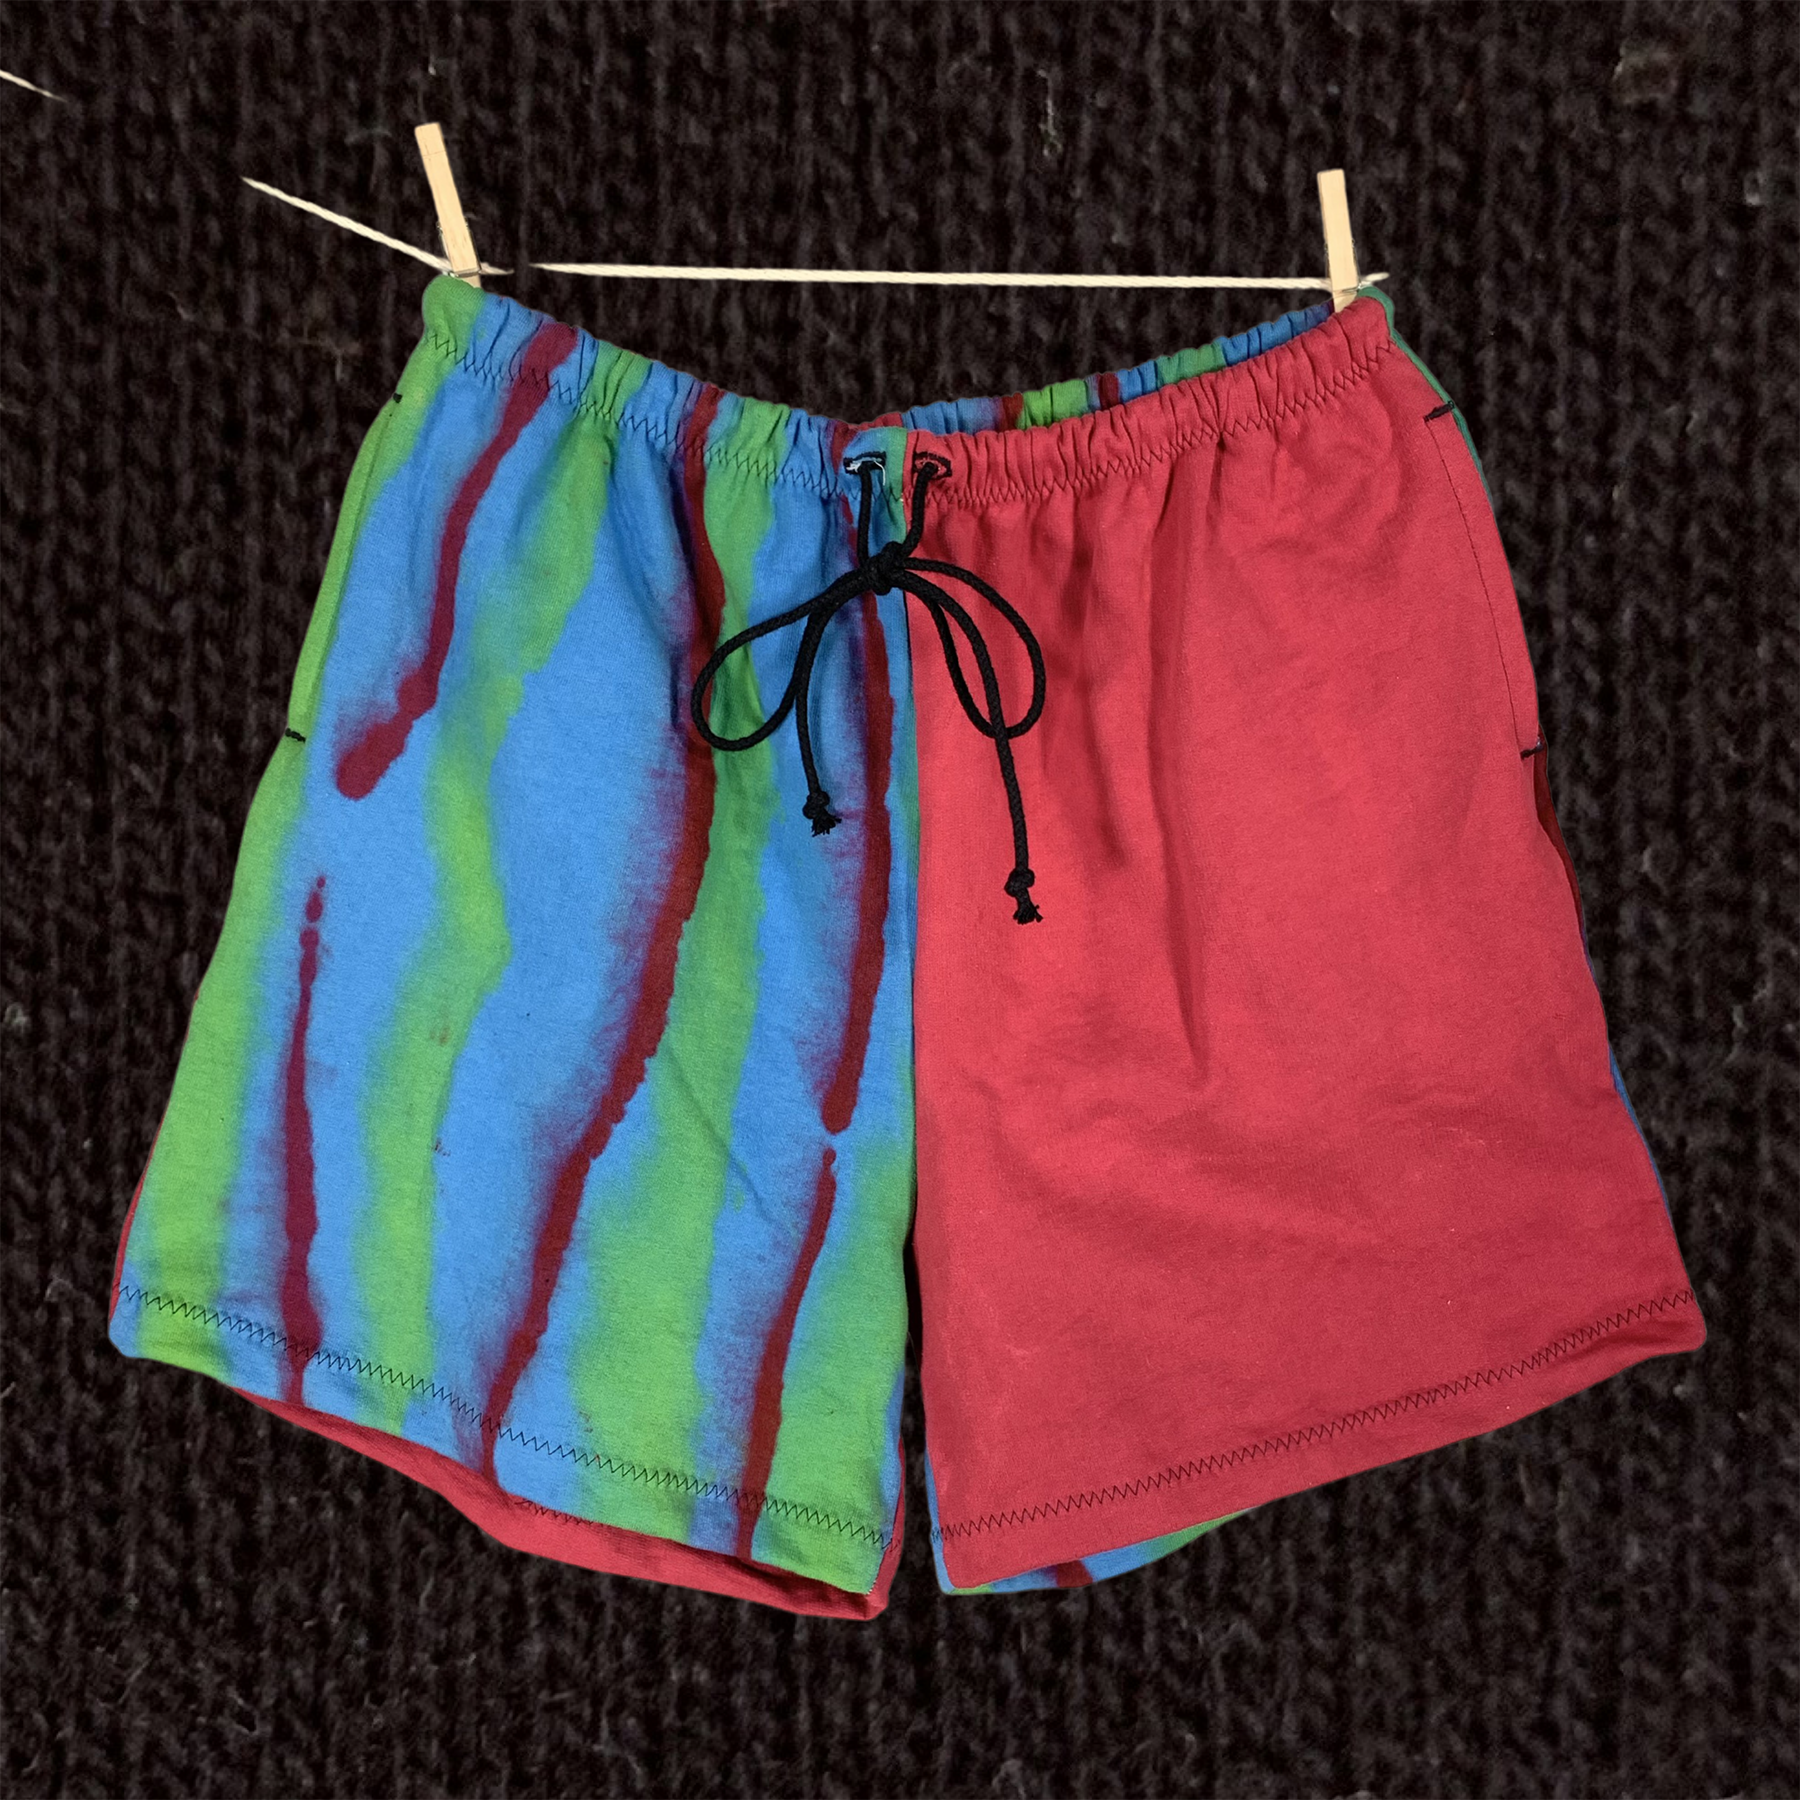 Home sewn high waisted shorts - XL